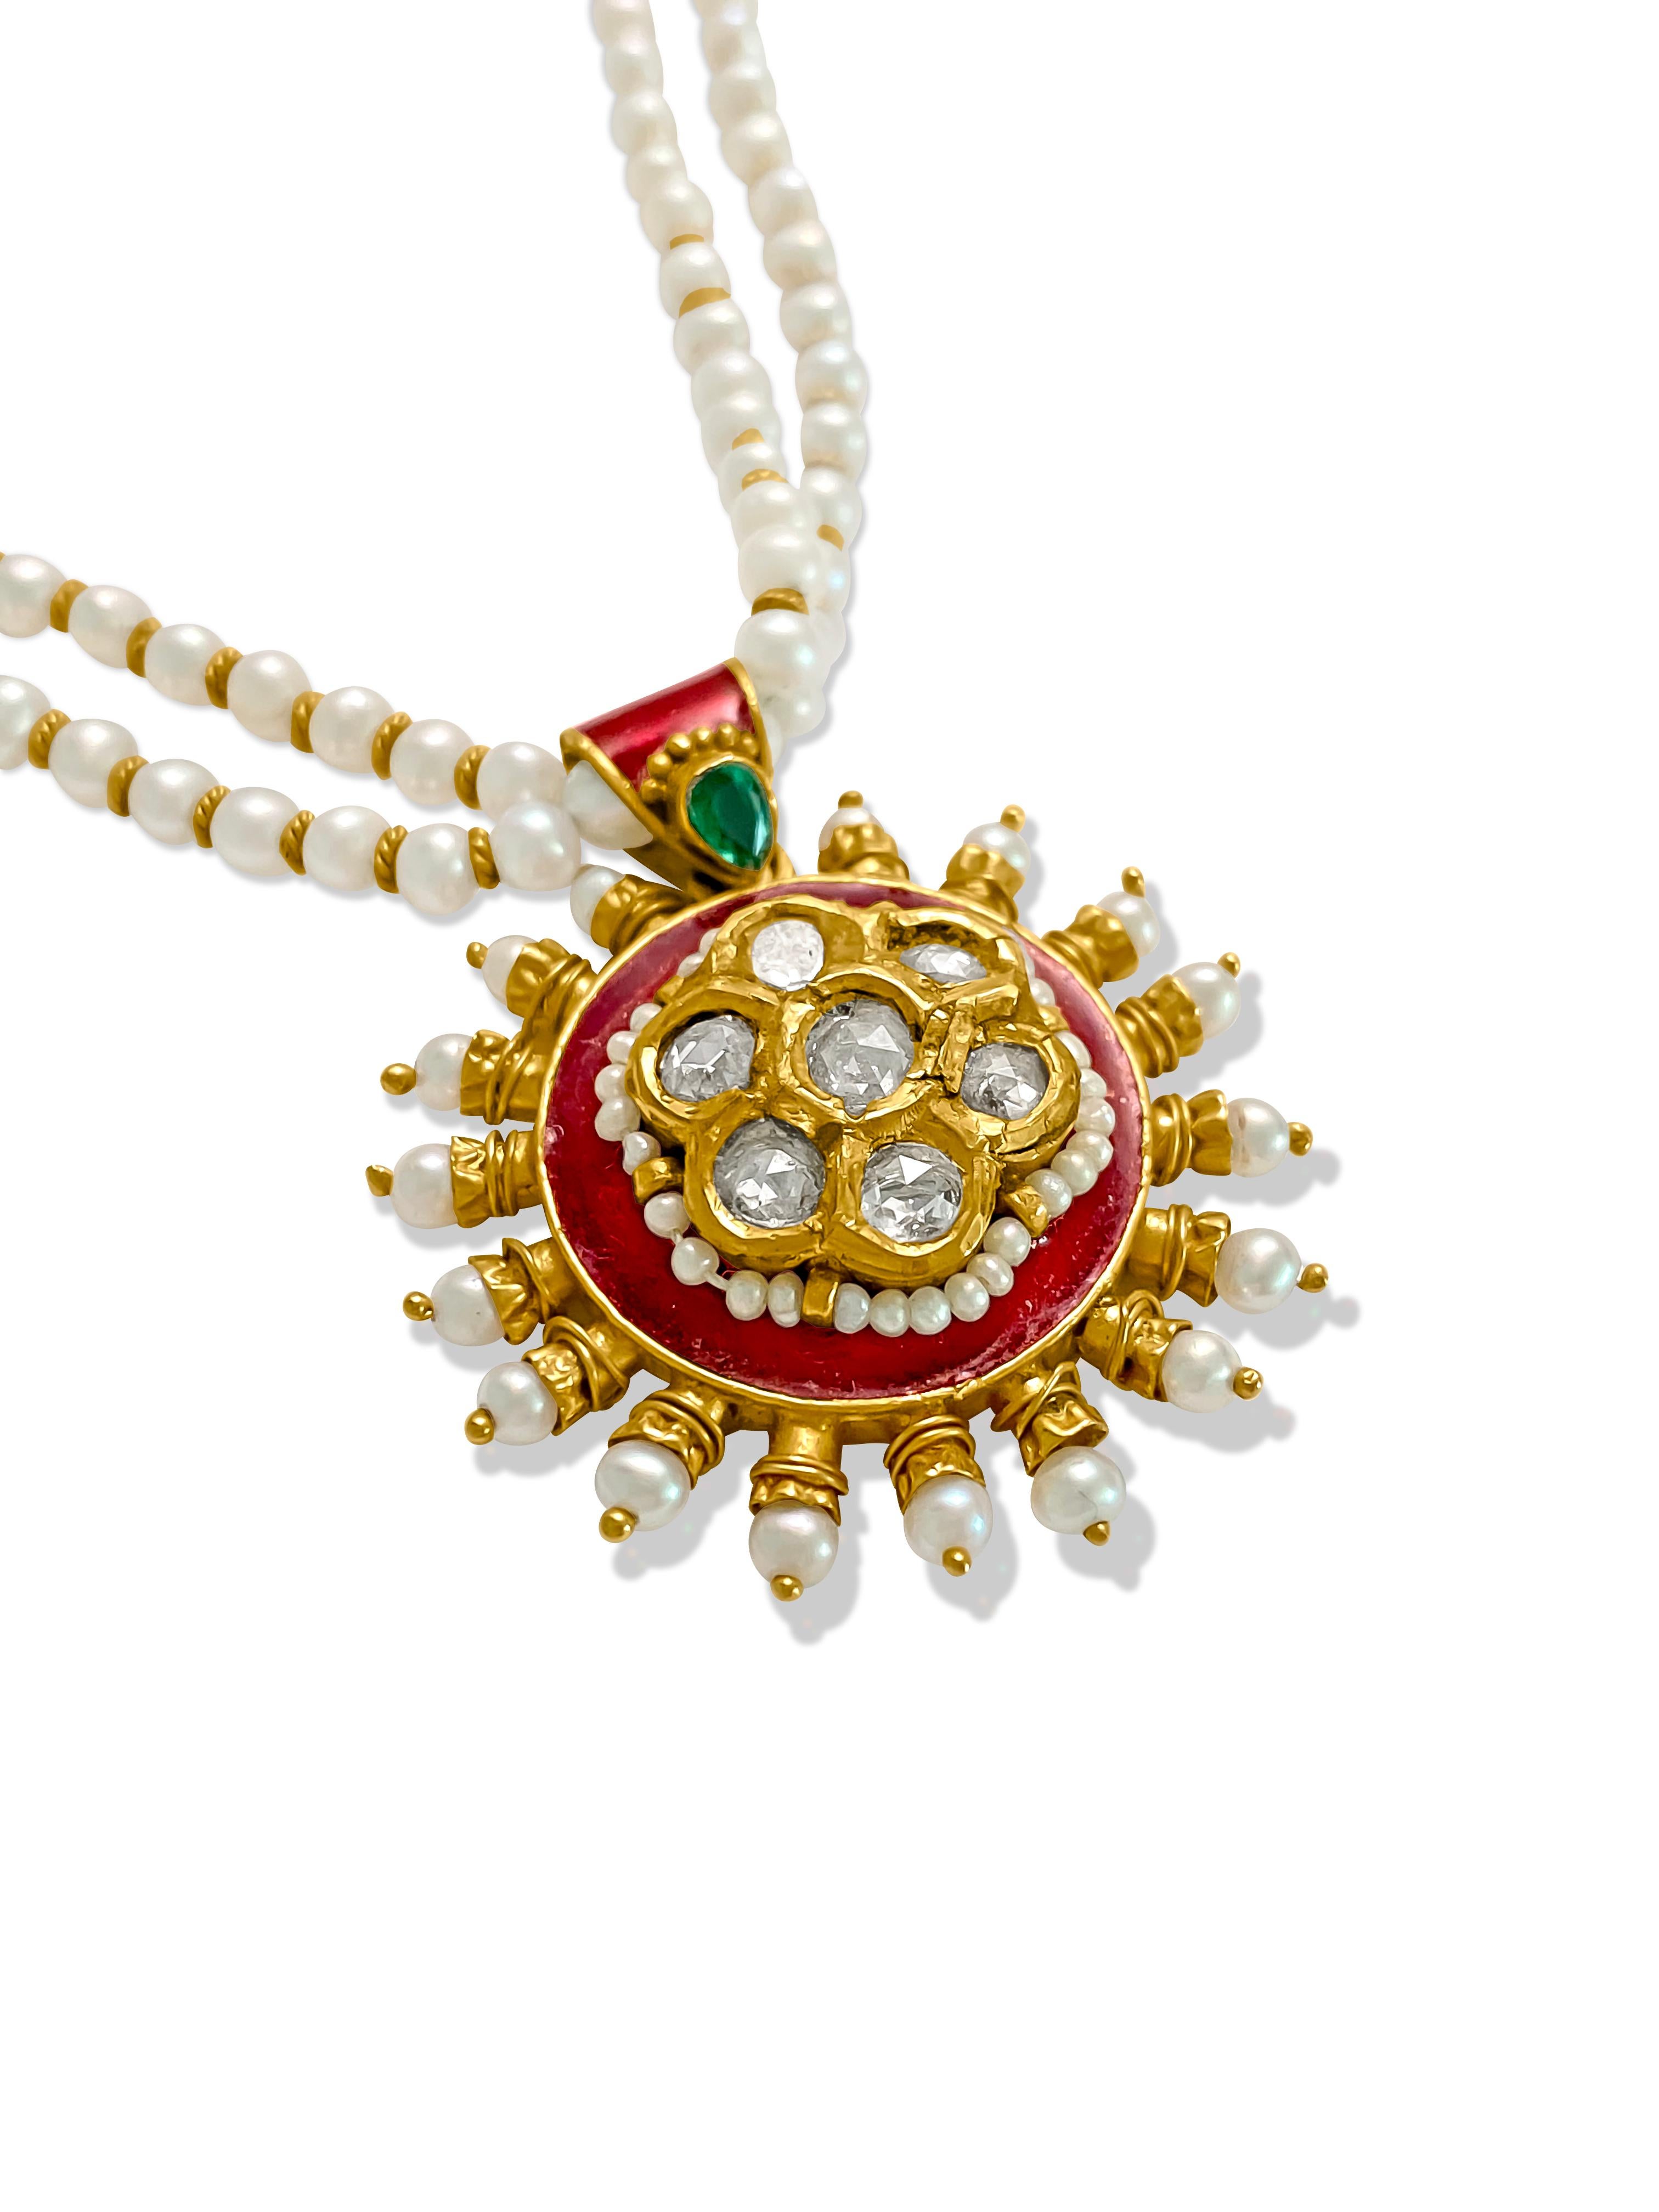 Ce superbe collier indien composé de plusieurs pierres précieuses peut également être porté comme un sutra Mangal. Les perles de ce collier proviennent du golfe Persique/Arabe et sont connues sous le nom de perles de Bassorah. Ces perles sont très